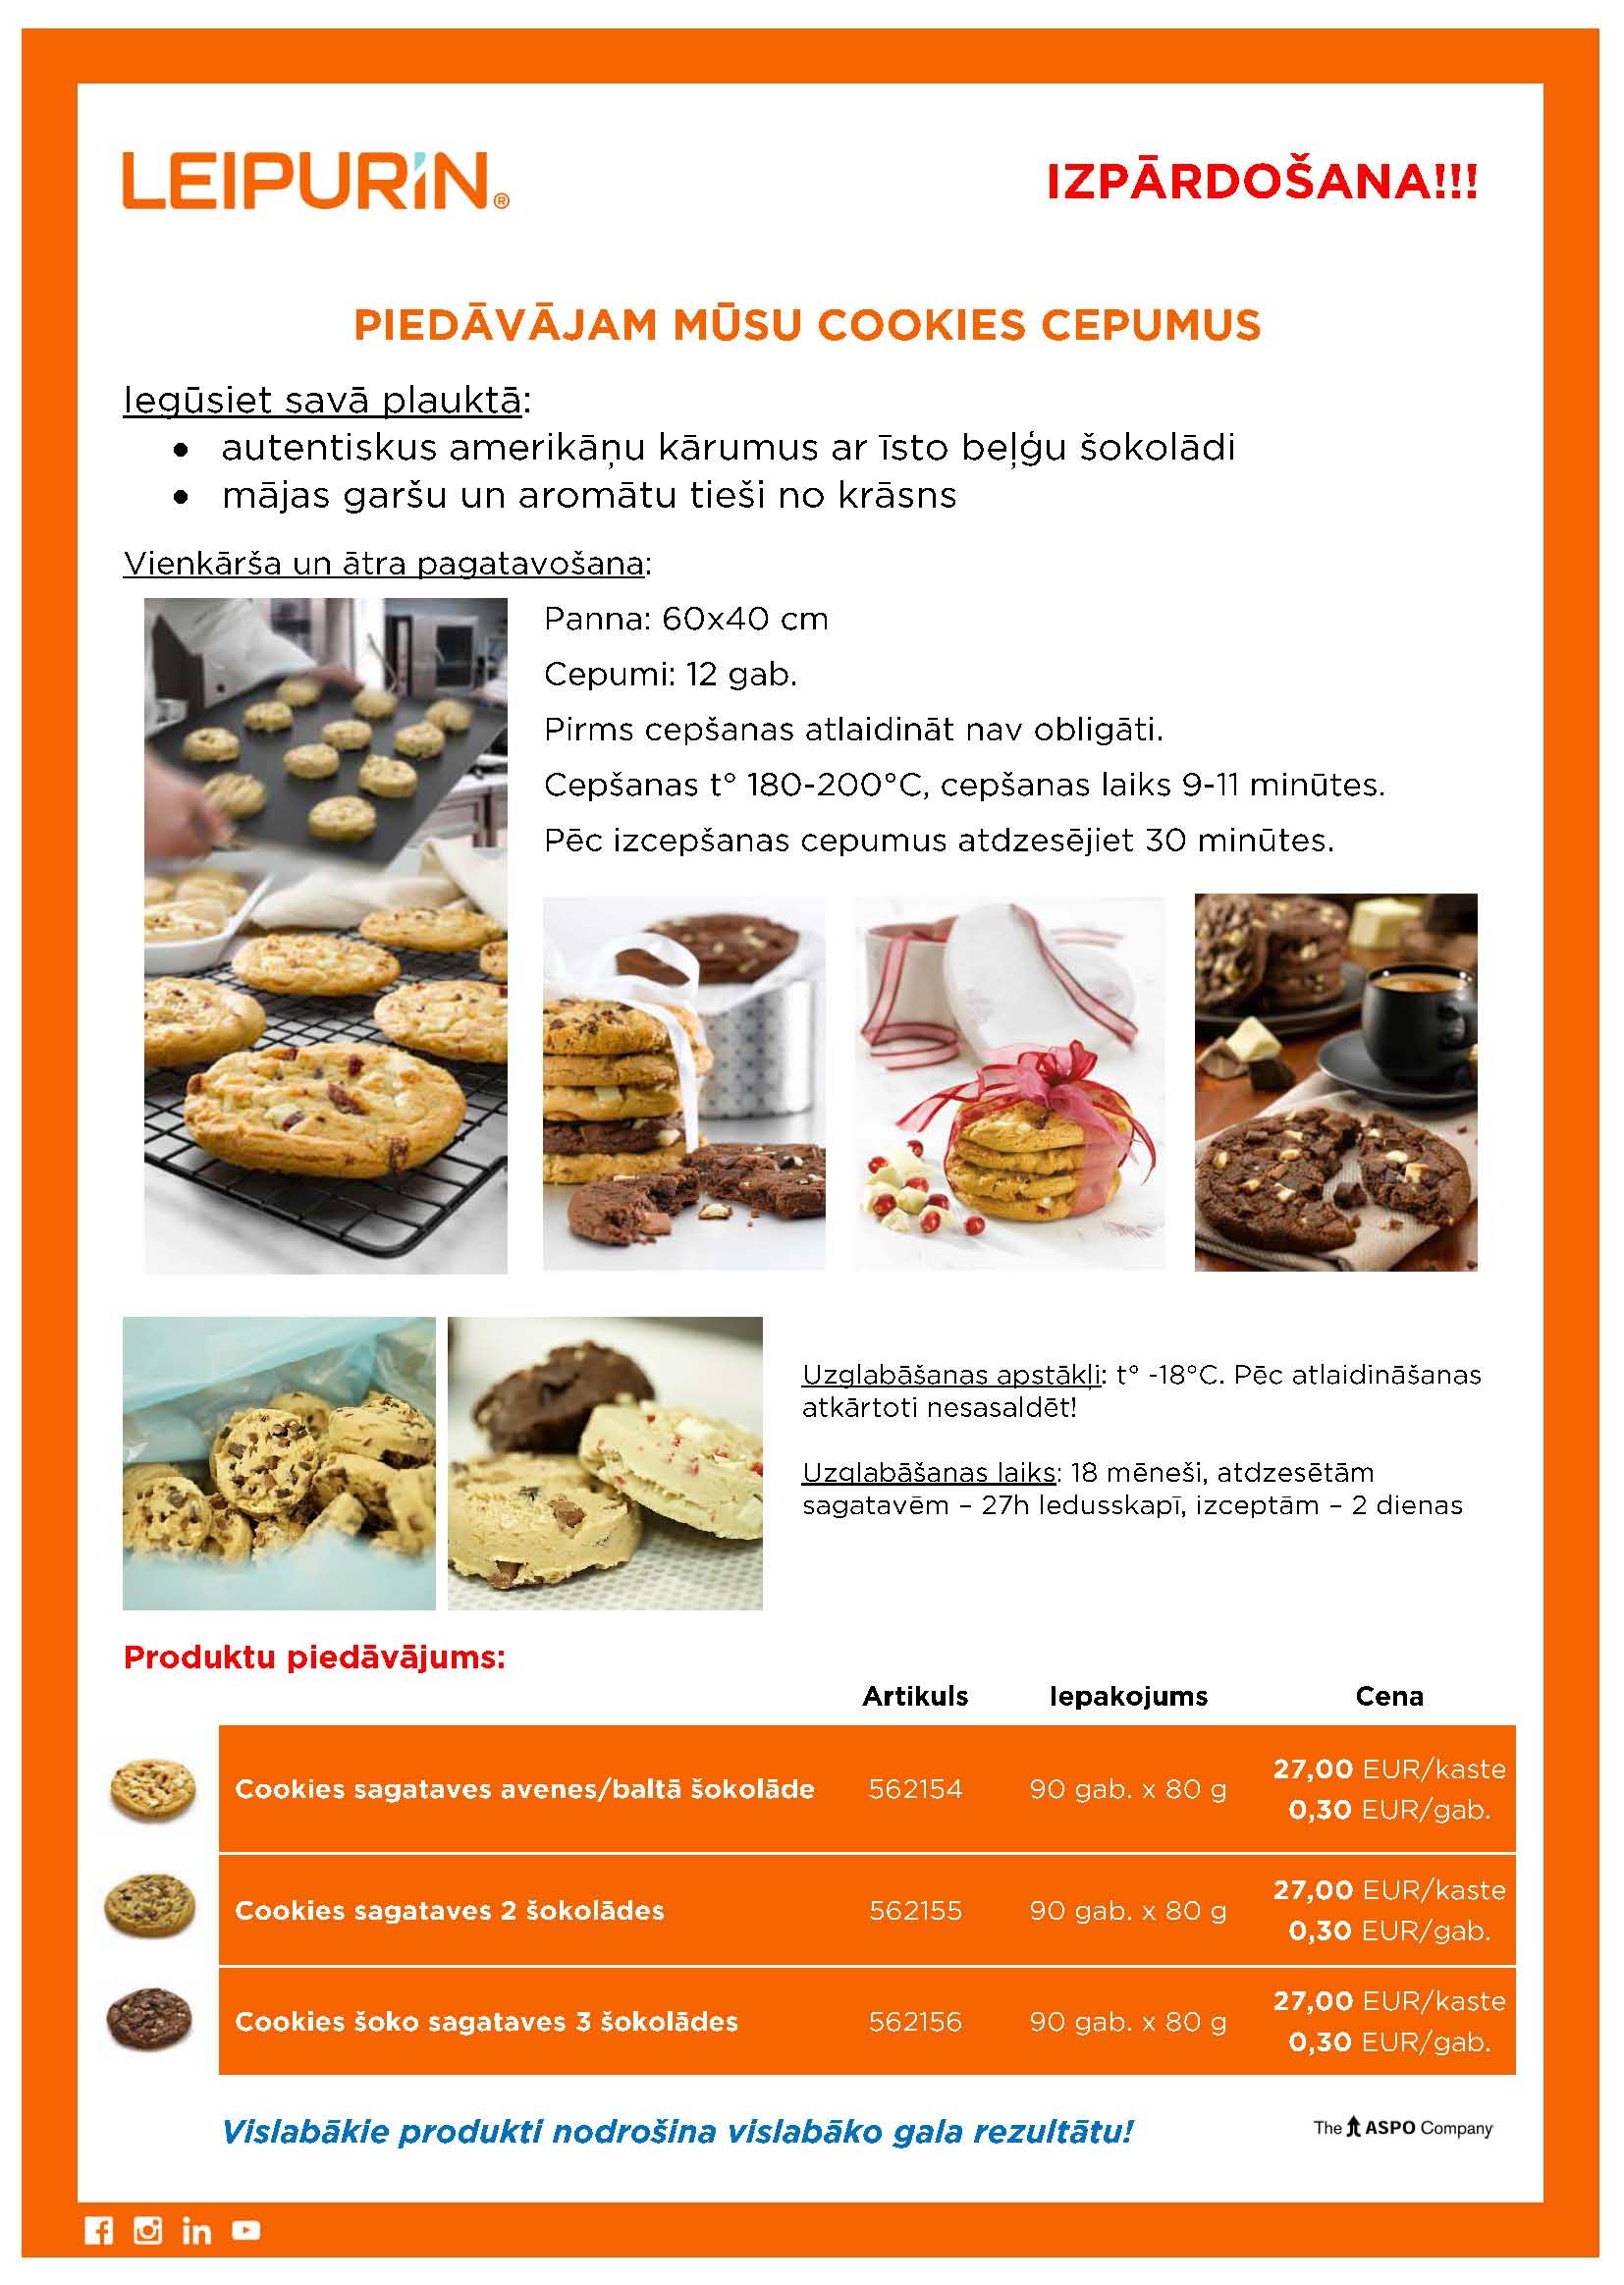 2020.08.27 Cookies sagataves - aatri sasaldeetas